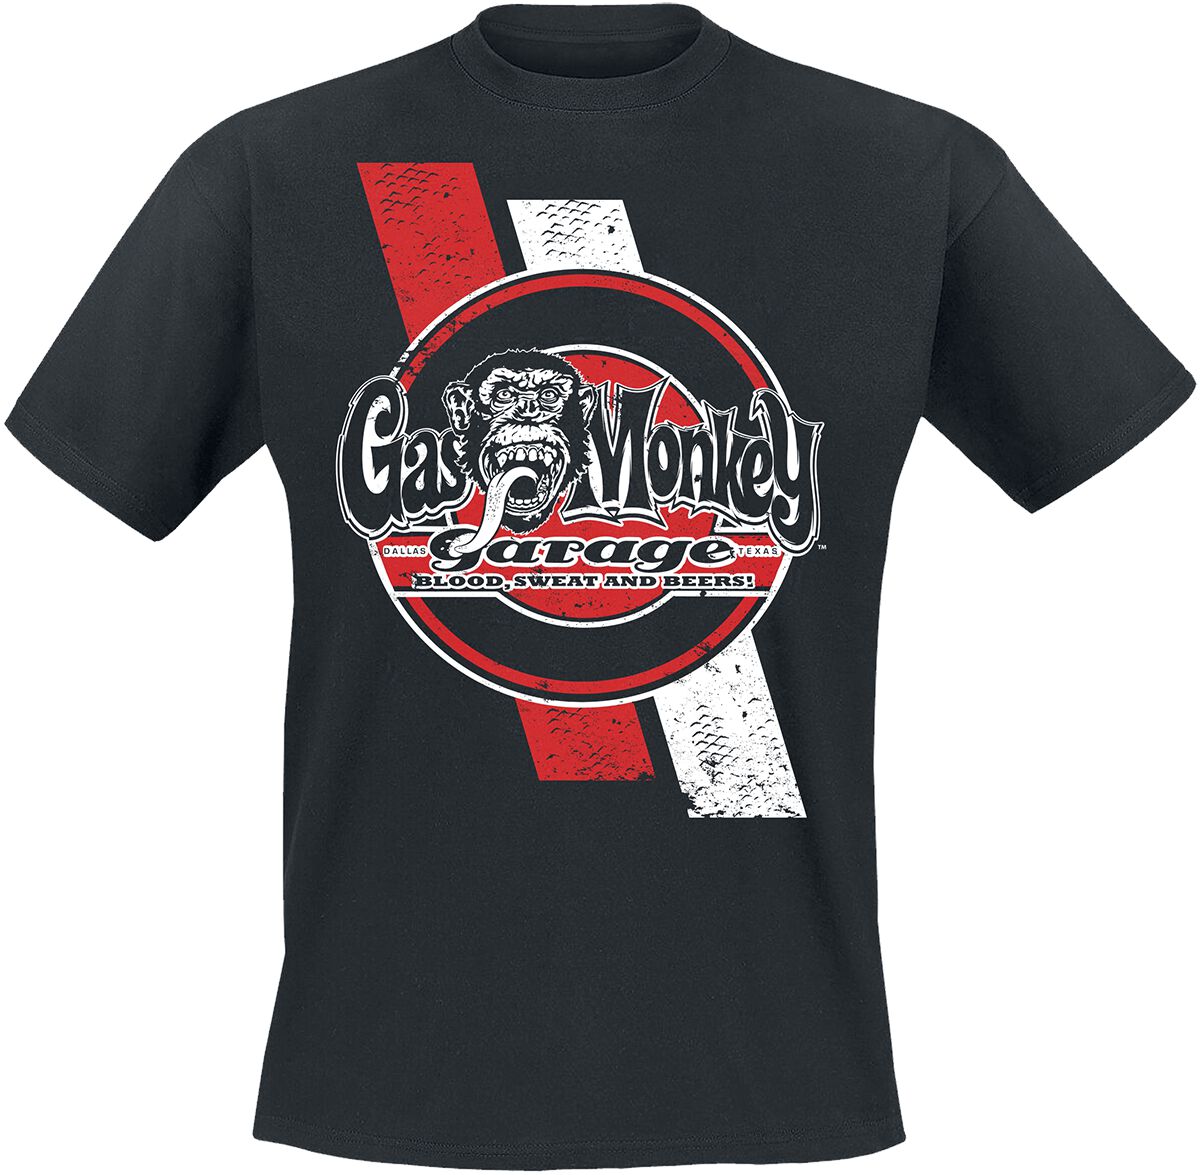 Gas Monkey Garage T-Shirt - Red And White Stripes - S bis XXL - für Männer - Größe M - schwarz  - Lizenzierter Fanartikel